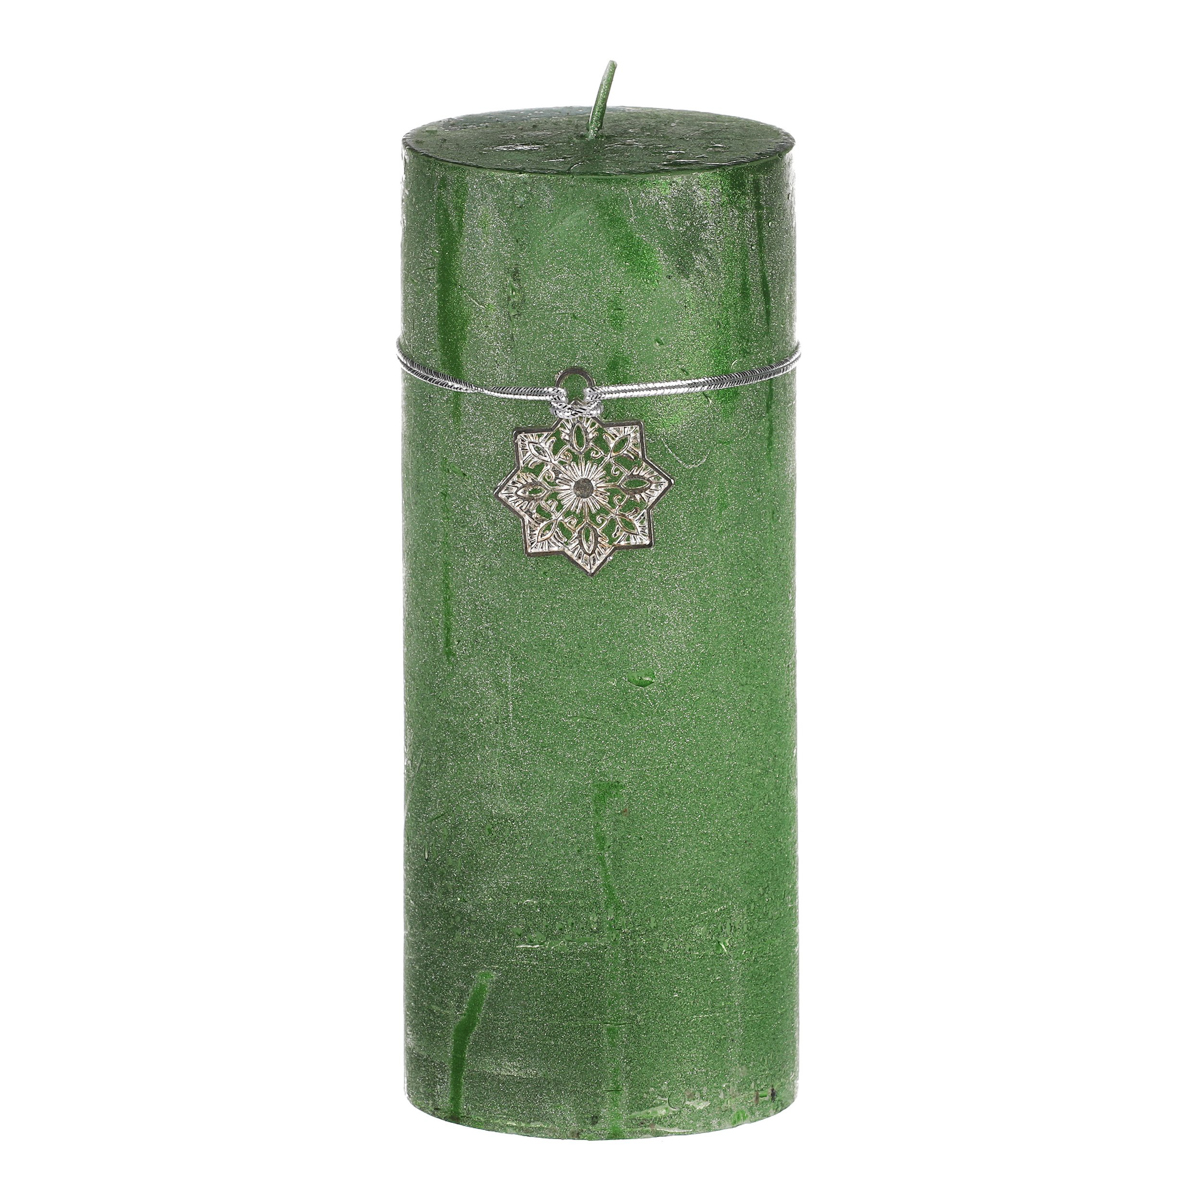 Svíčka vánoční, zelená barva. 367g vosku.